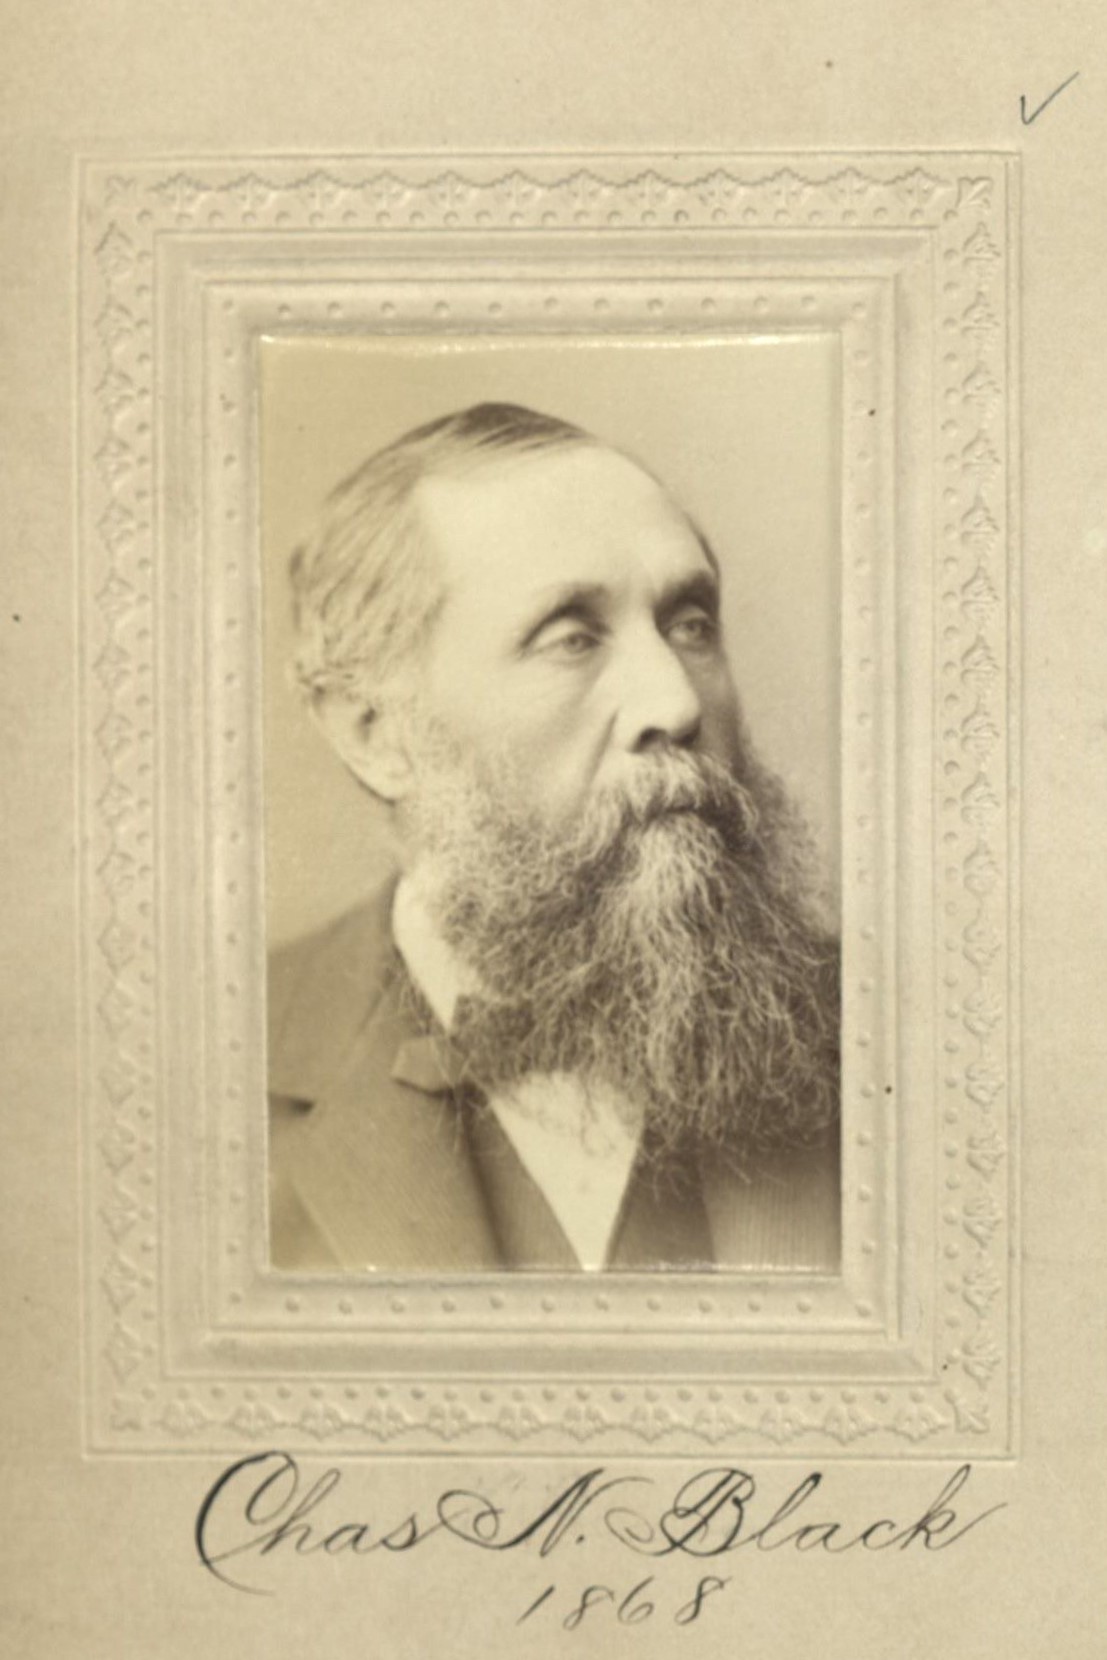 Member portrait of Charles N. Black